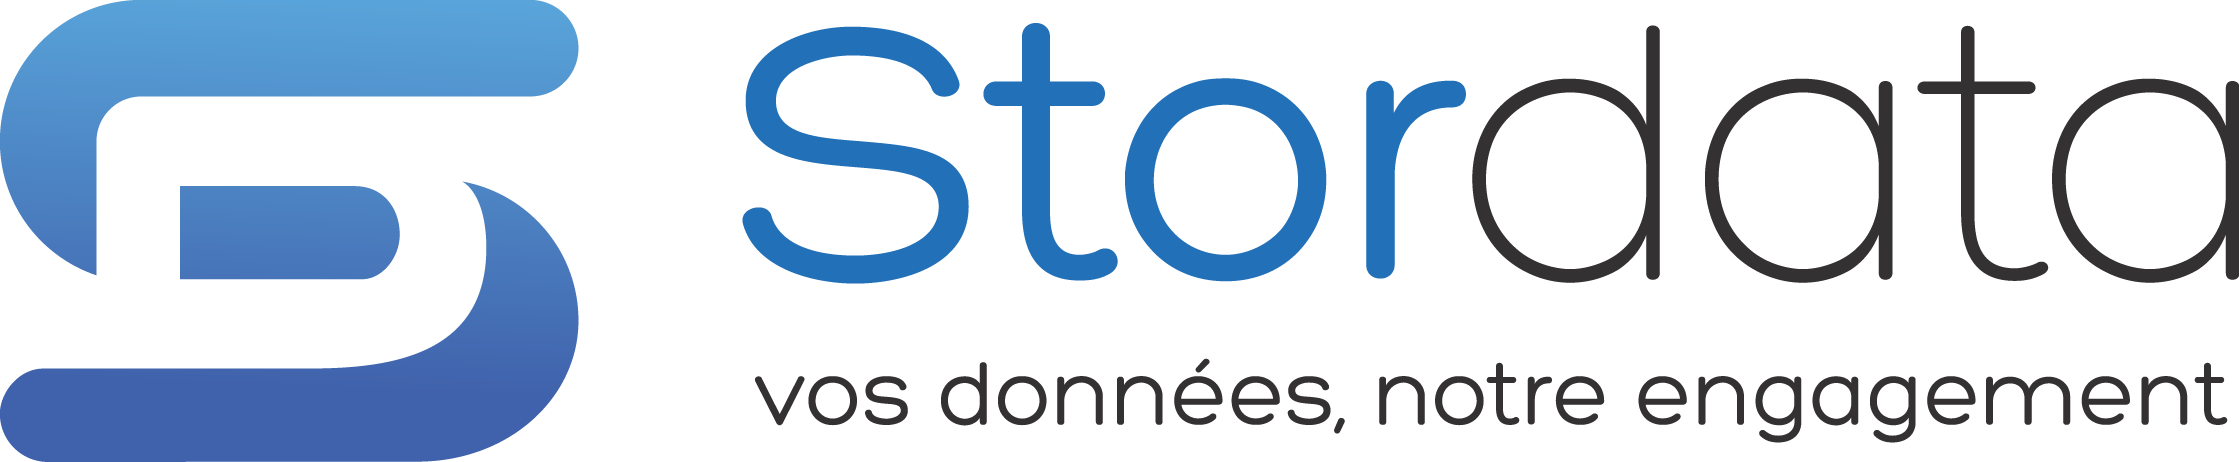 logo Stordata